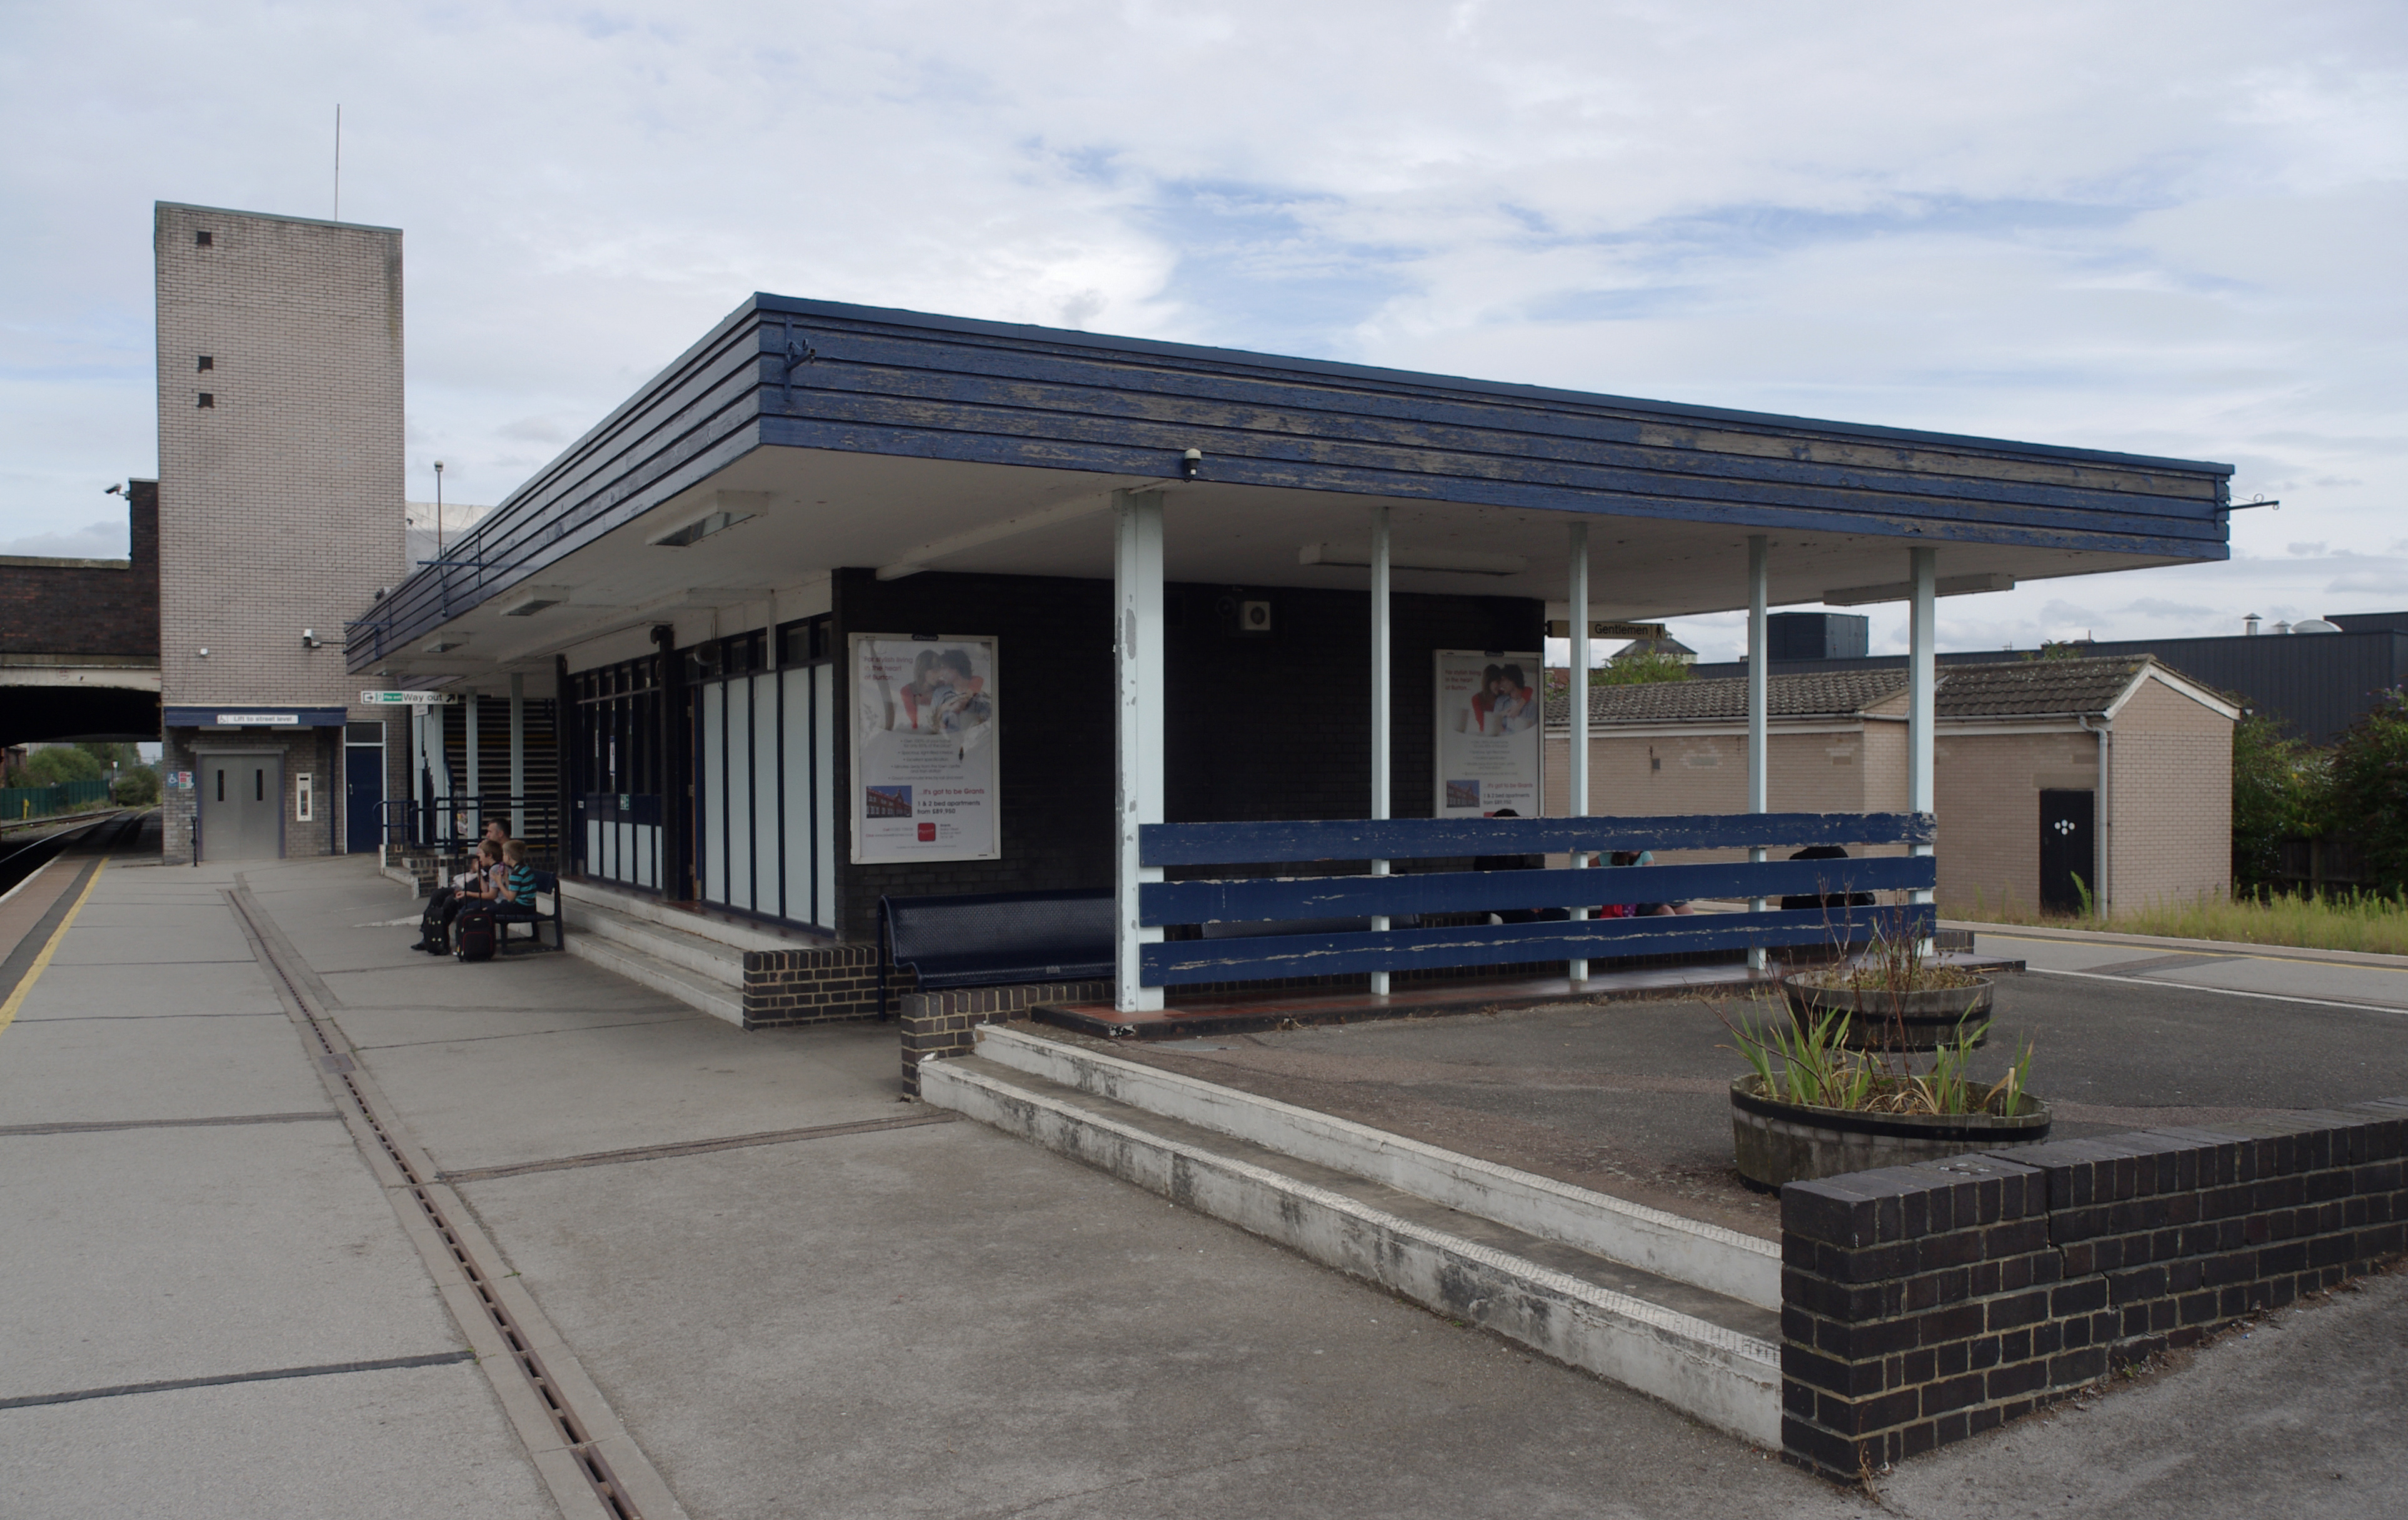 Burton-on-Trent railway station - Wikipedia